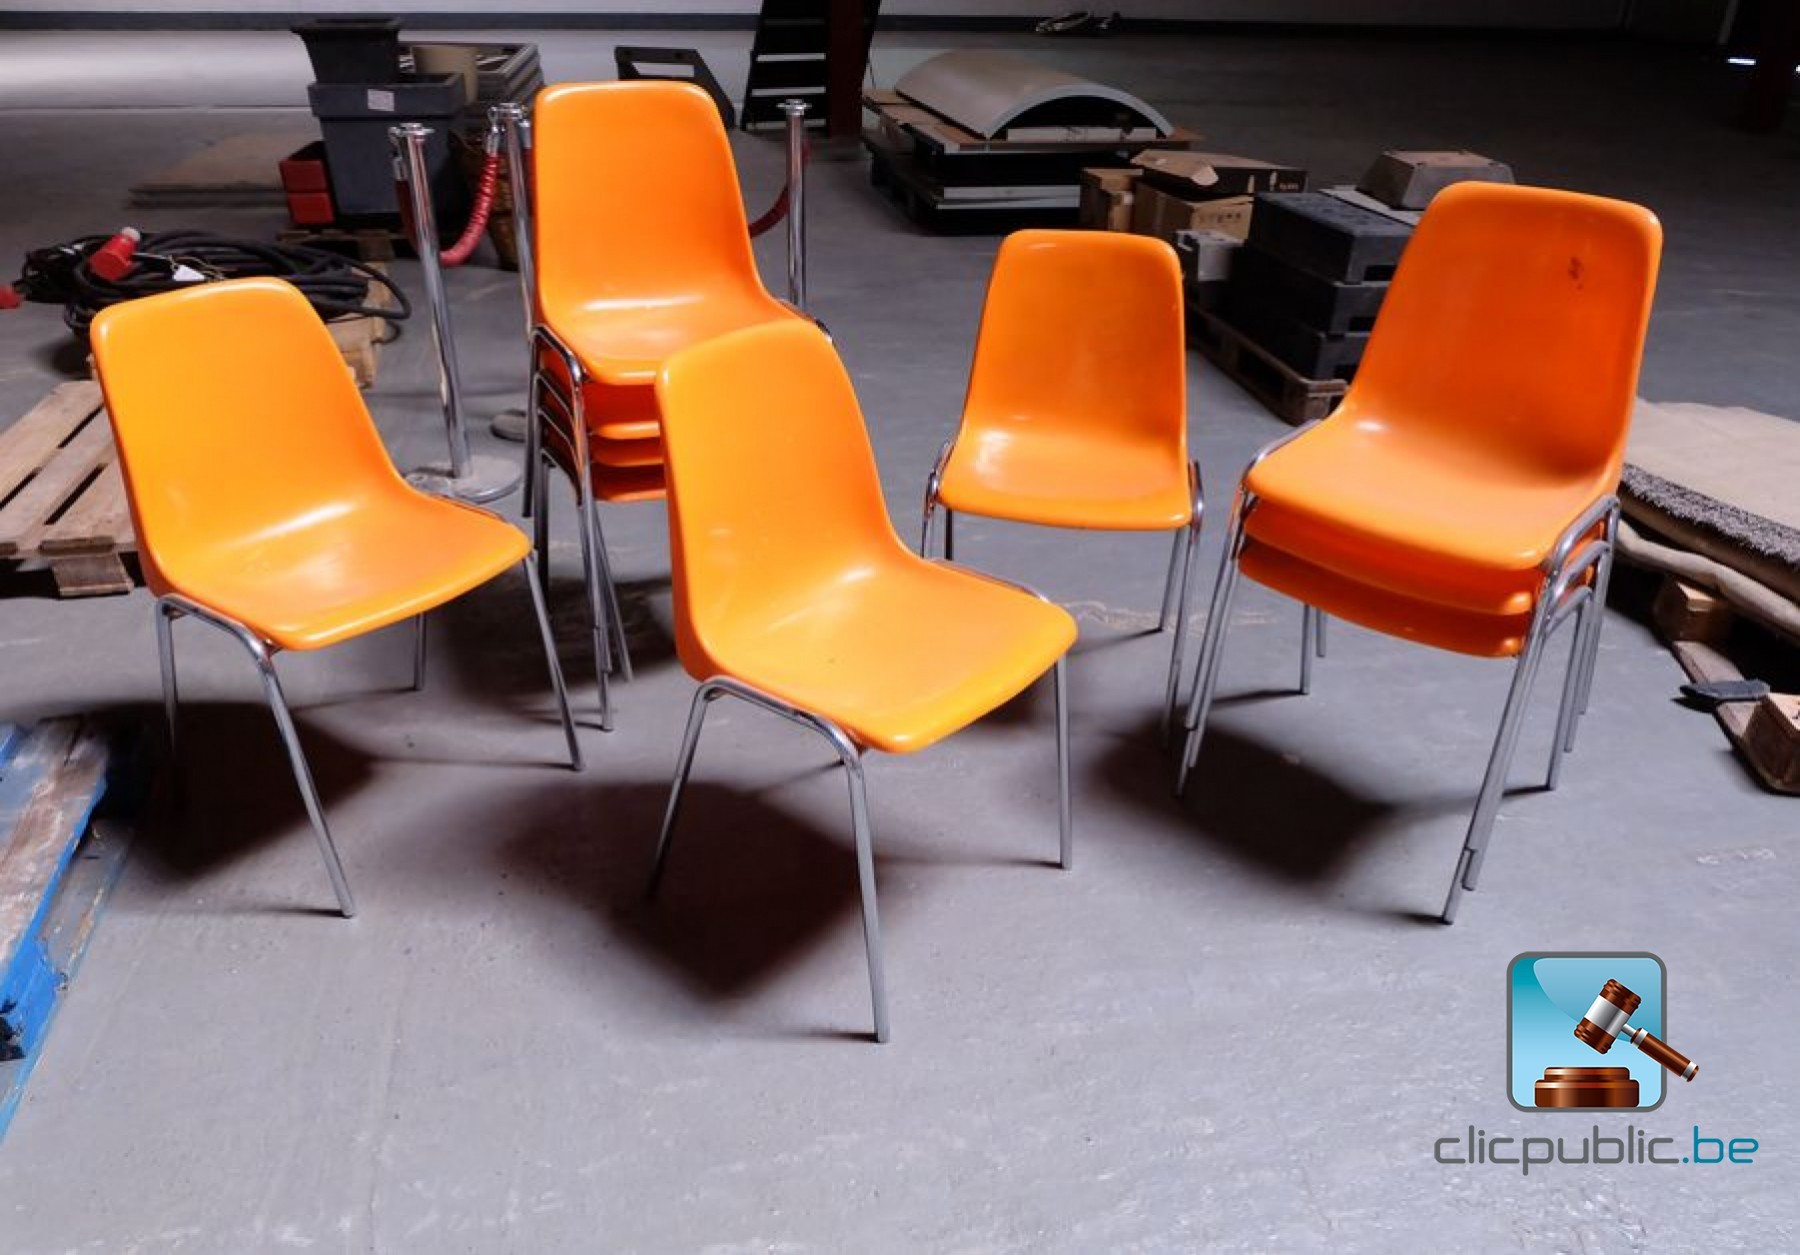 Lot de chaises  Clicpublic.be, les ventes publiques en 1 clic.